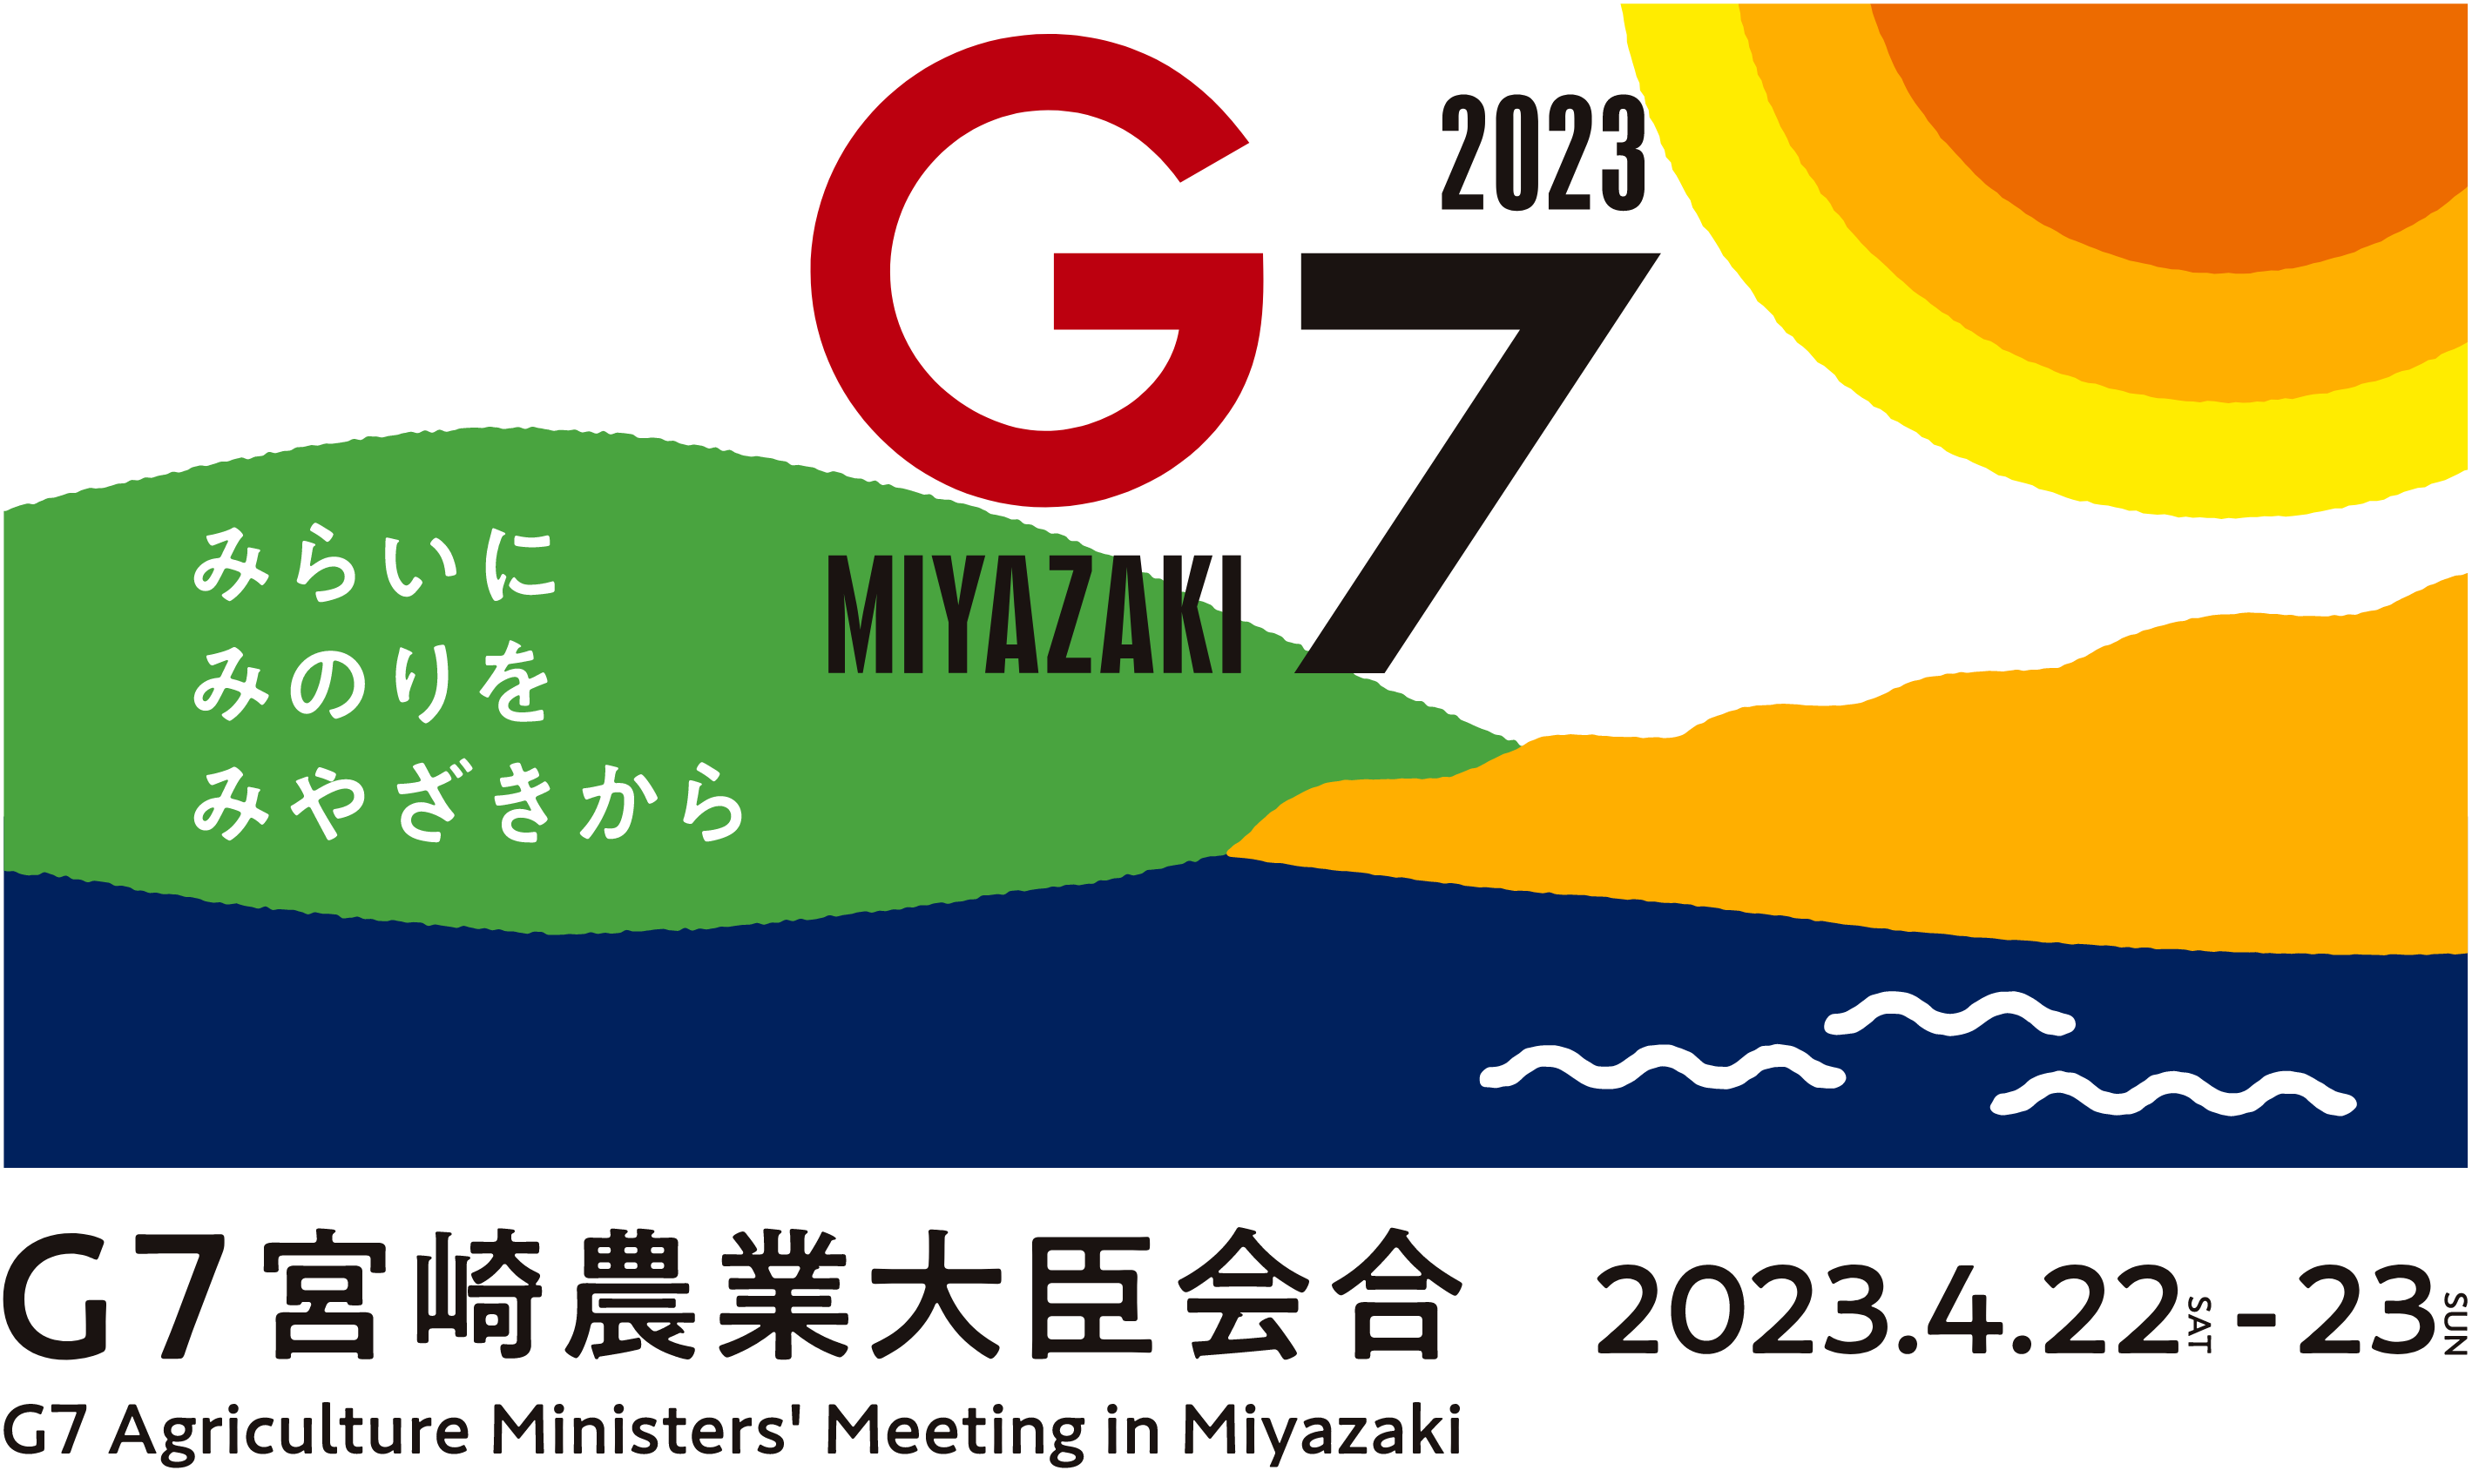 2023年G7Miyazaki、みらいにいのりをみやざきから、G7宮崎農業大臣会合（G7 Agriculture Minister’s Meeting in Miyazaki）2023年4月22日（土）から4月23日（日）まで開催